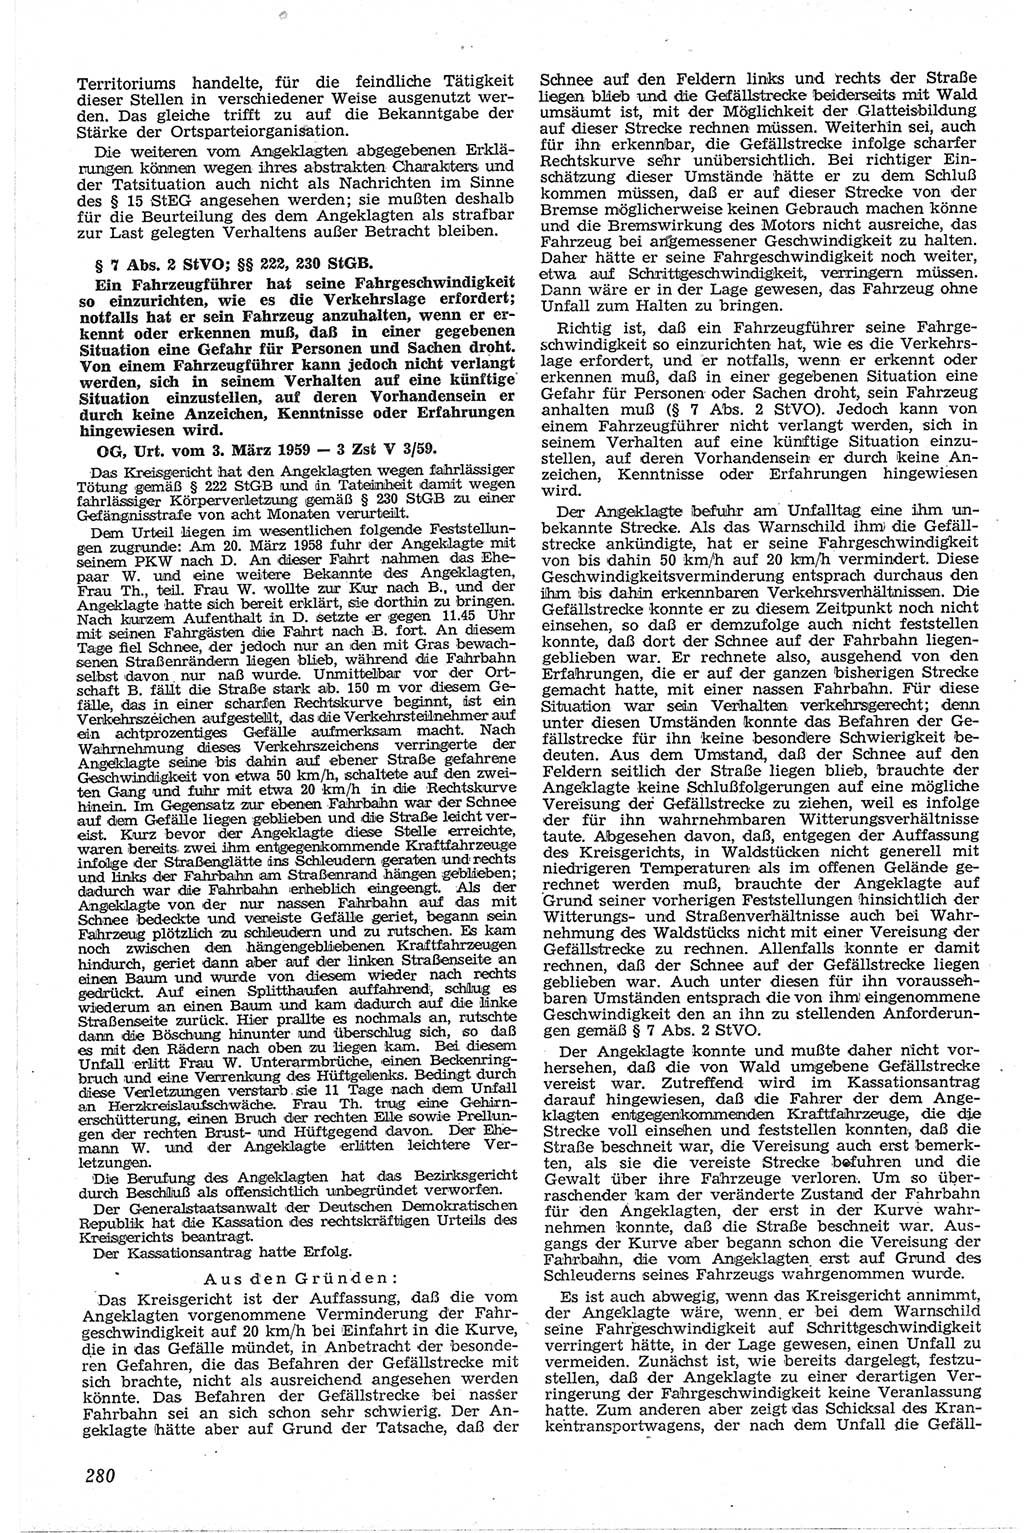 Neue Justiz (NJ), Zeitschrift für Recht und Rechtswissenschaft [Deutsche Demokratische Republik (DDR)], 13. Jahrgang 1959, Seite 280 (NJ DDR 1959, S. 280)